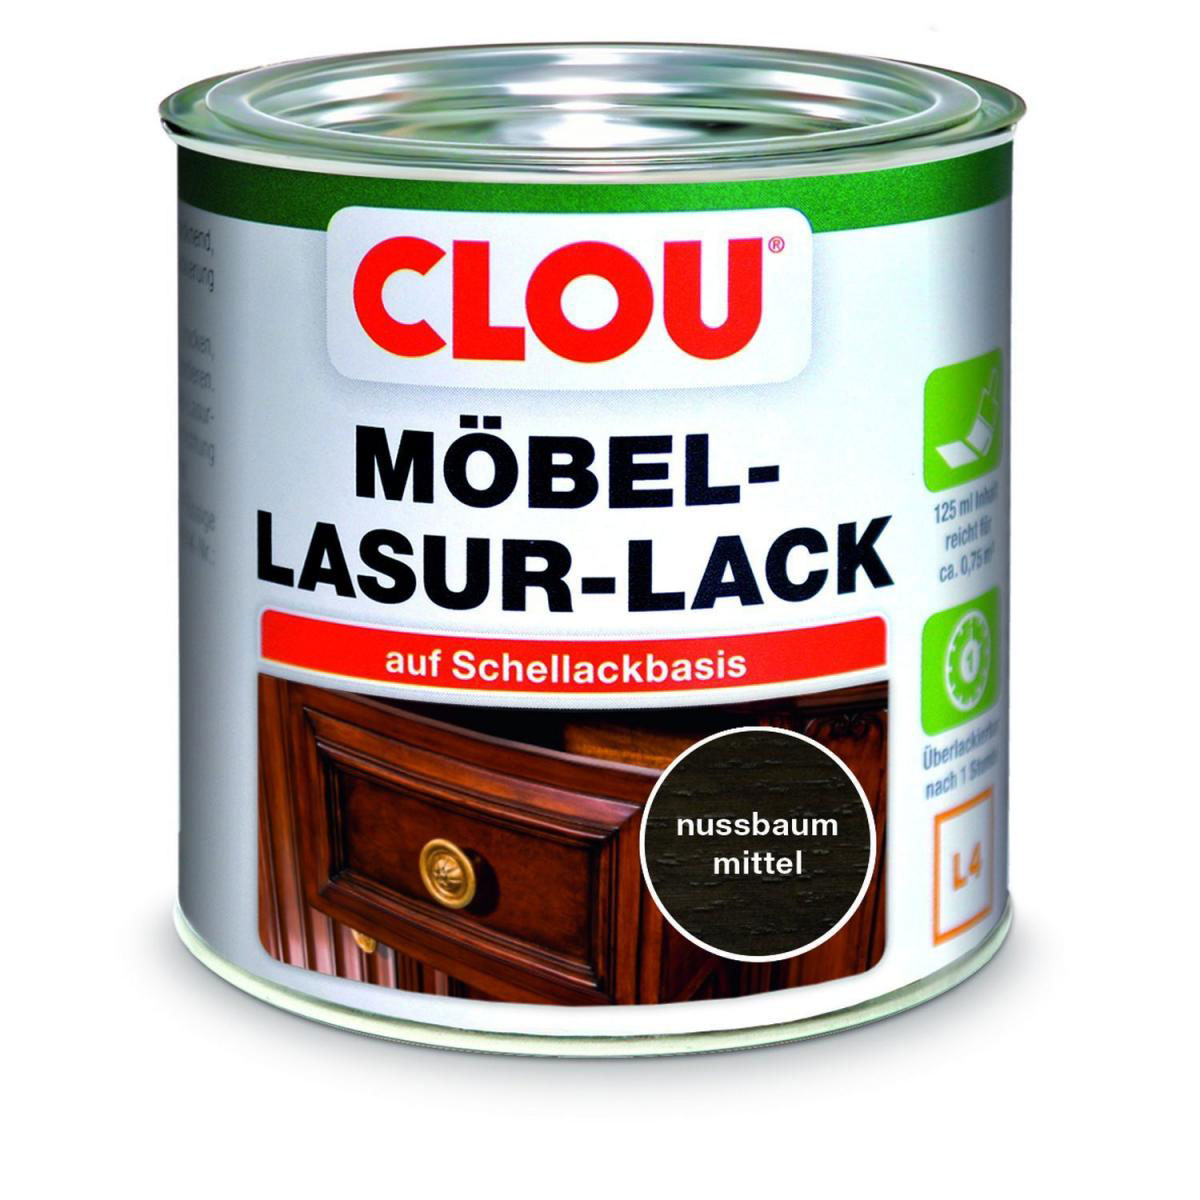 Clou L4 Möbel-Lack „Nussbaum mittel“, 125 ml